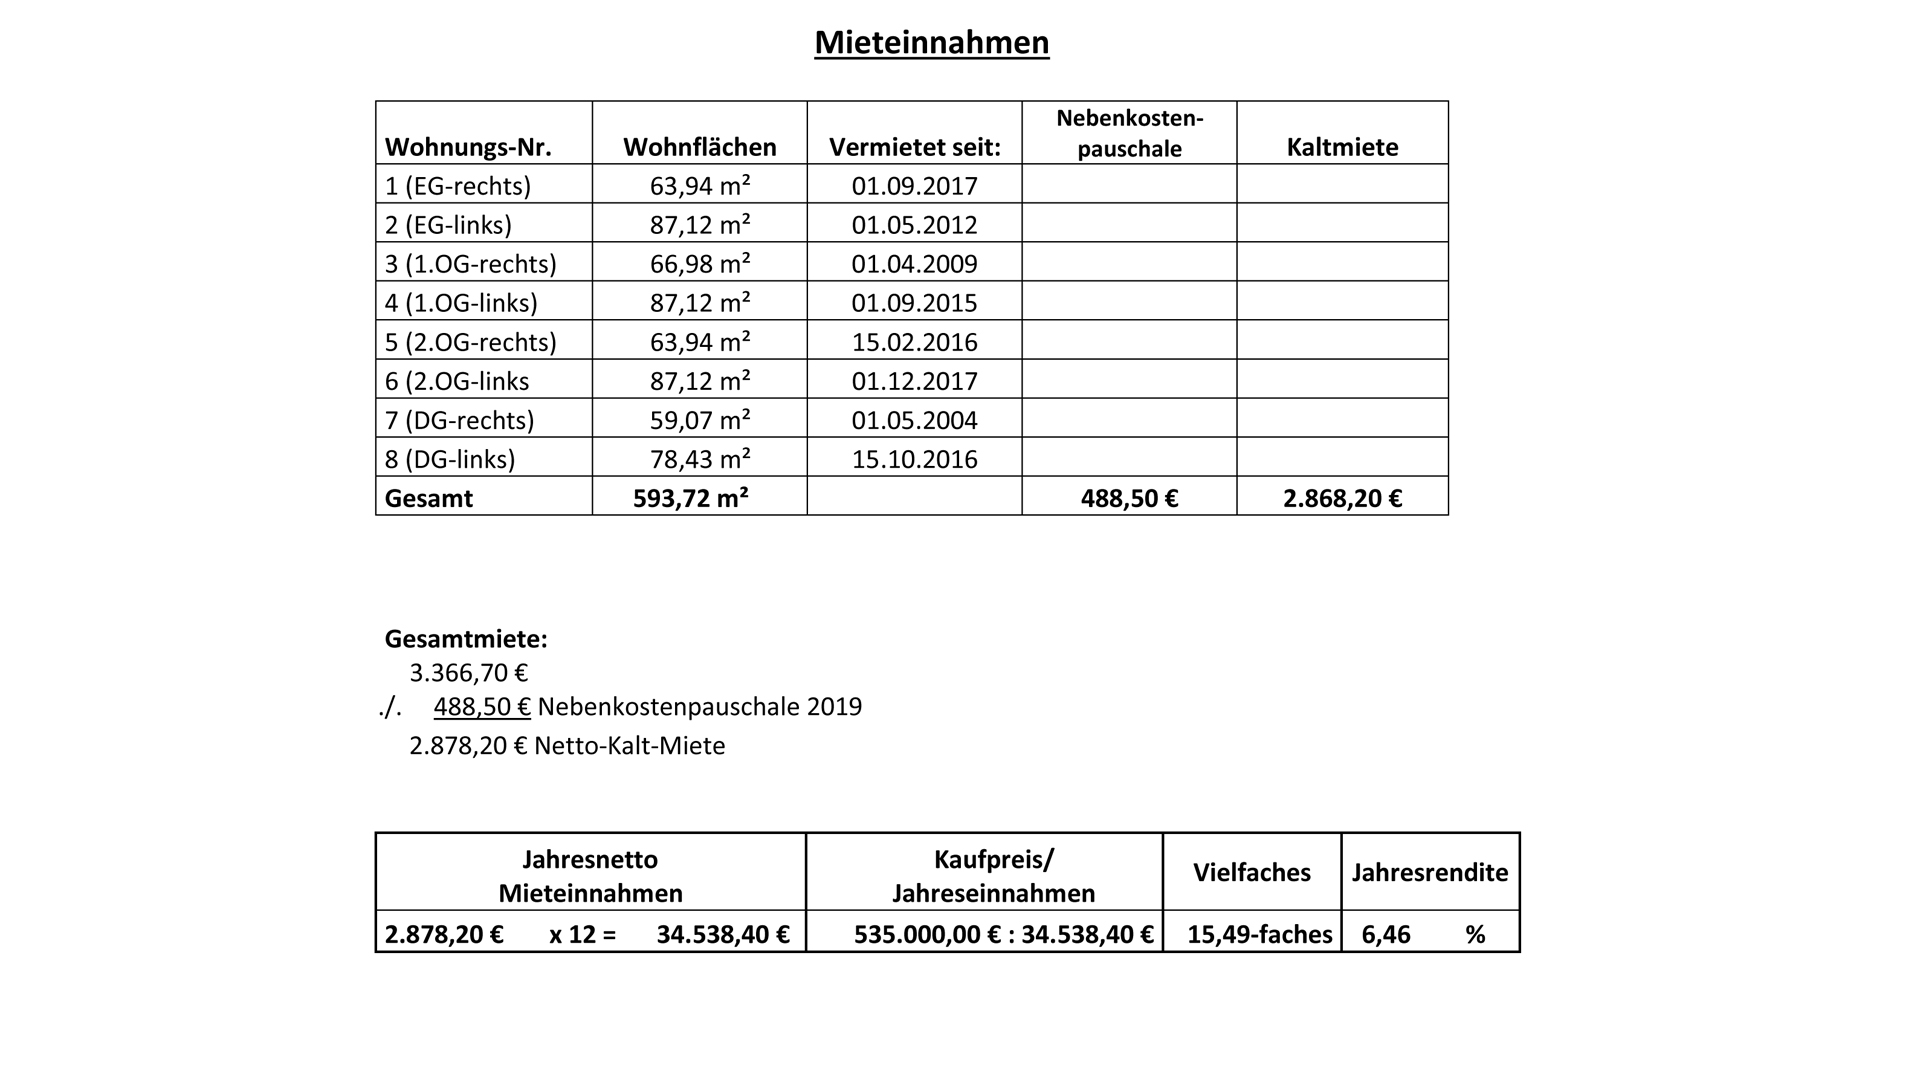 Gummersbach-Derschlag: Achtung Kapitalanleger! 6,5 % Rendite! , Rendite-Aufstellung